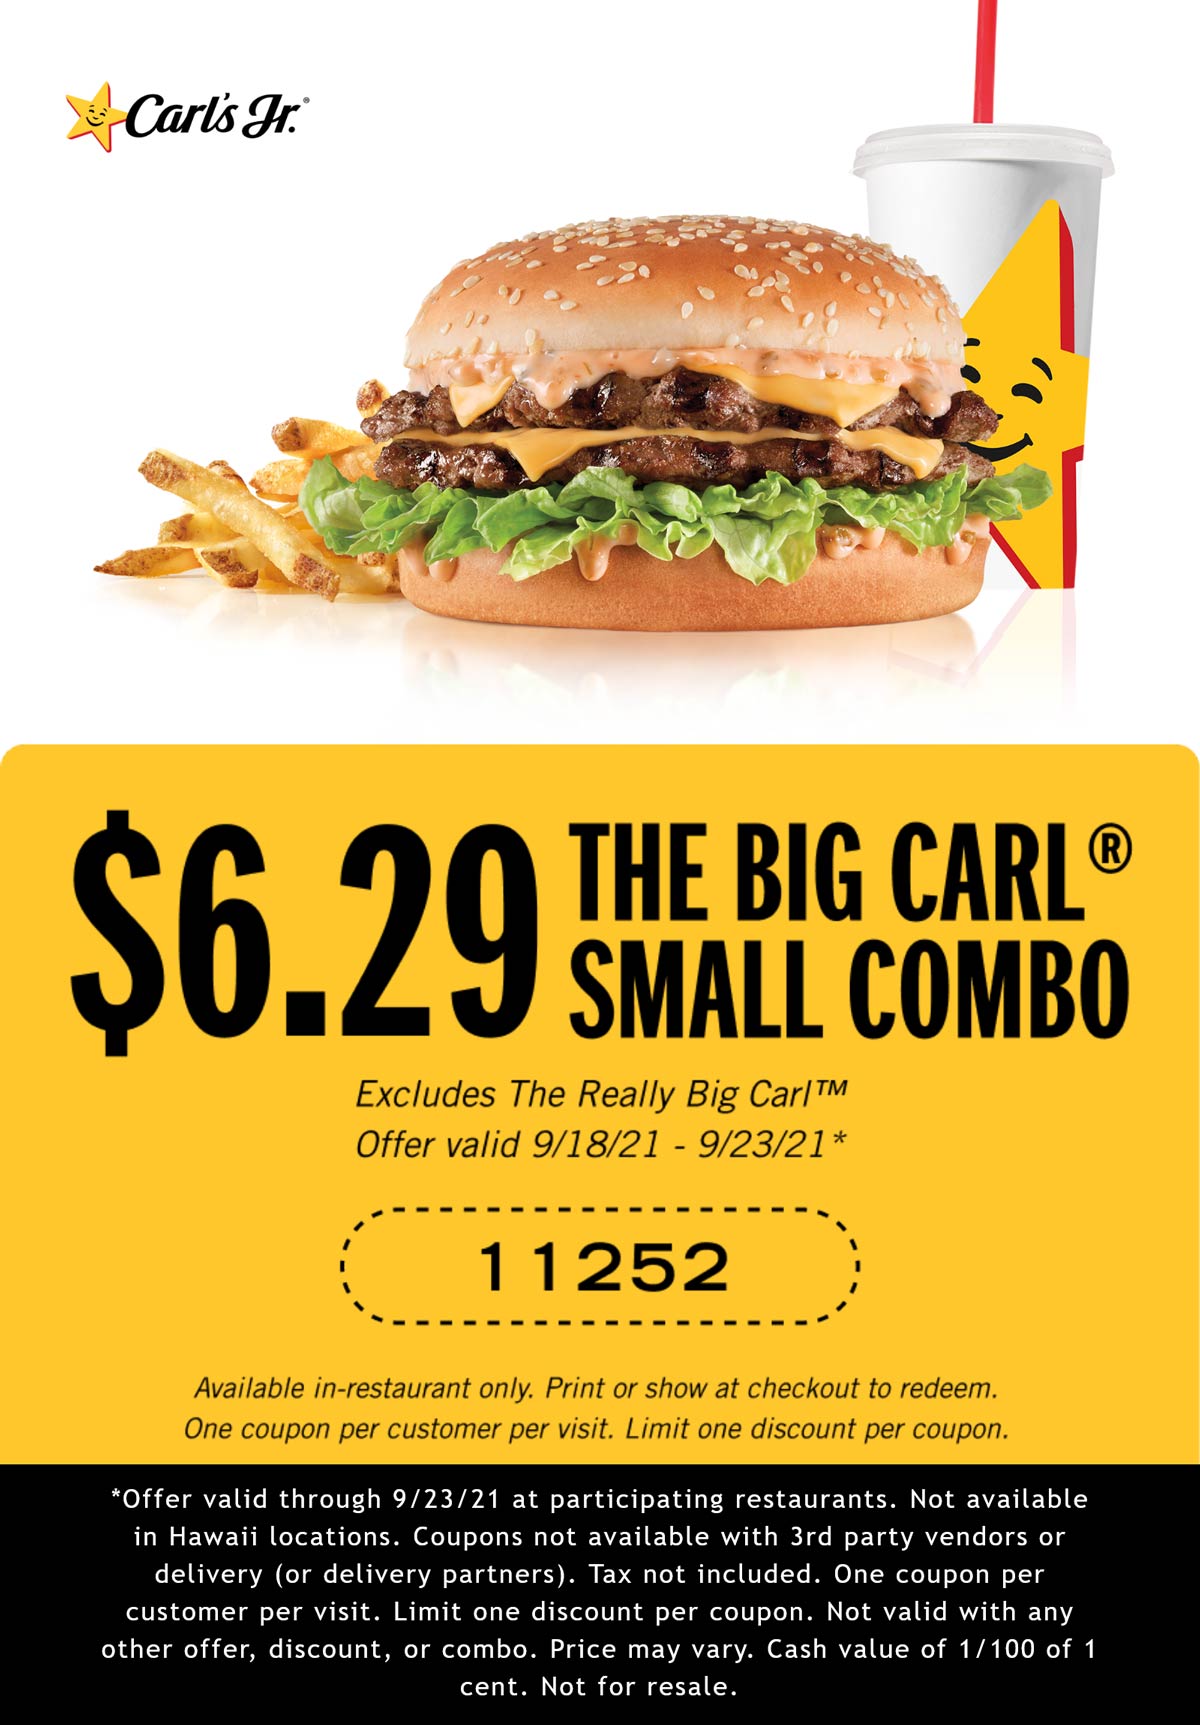 Carls Jr restaurants Coupon  Double cheeseburger + fries + drink = $6.29 at Carls Jr #carlsjr 